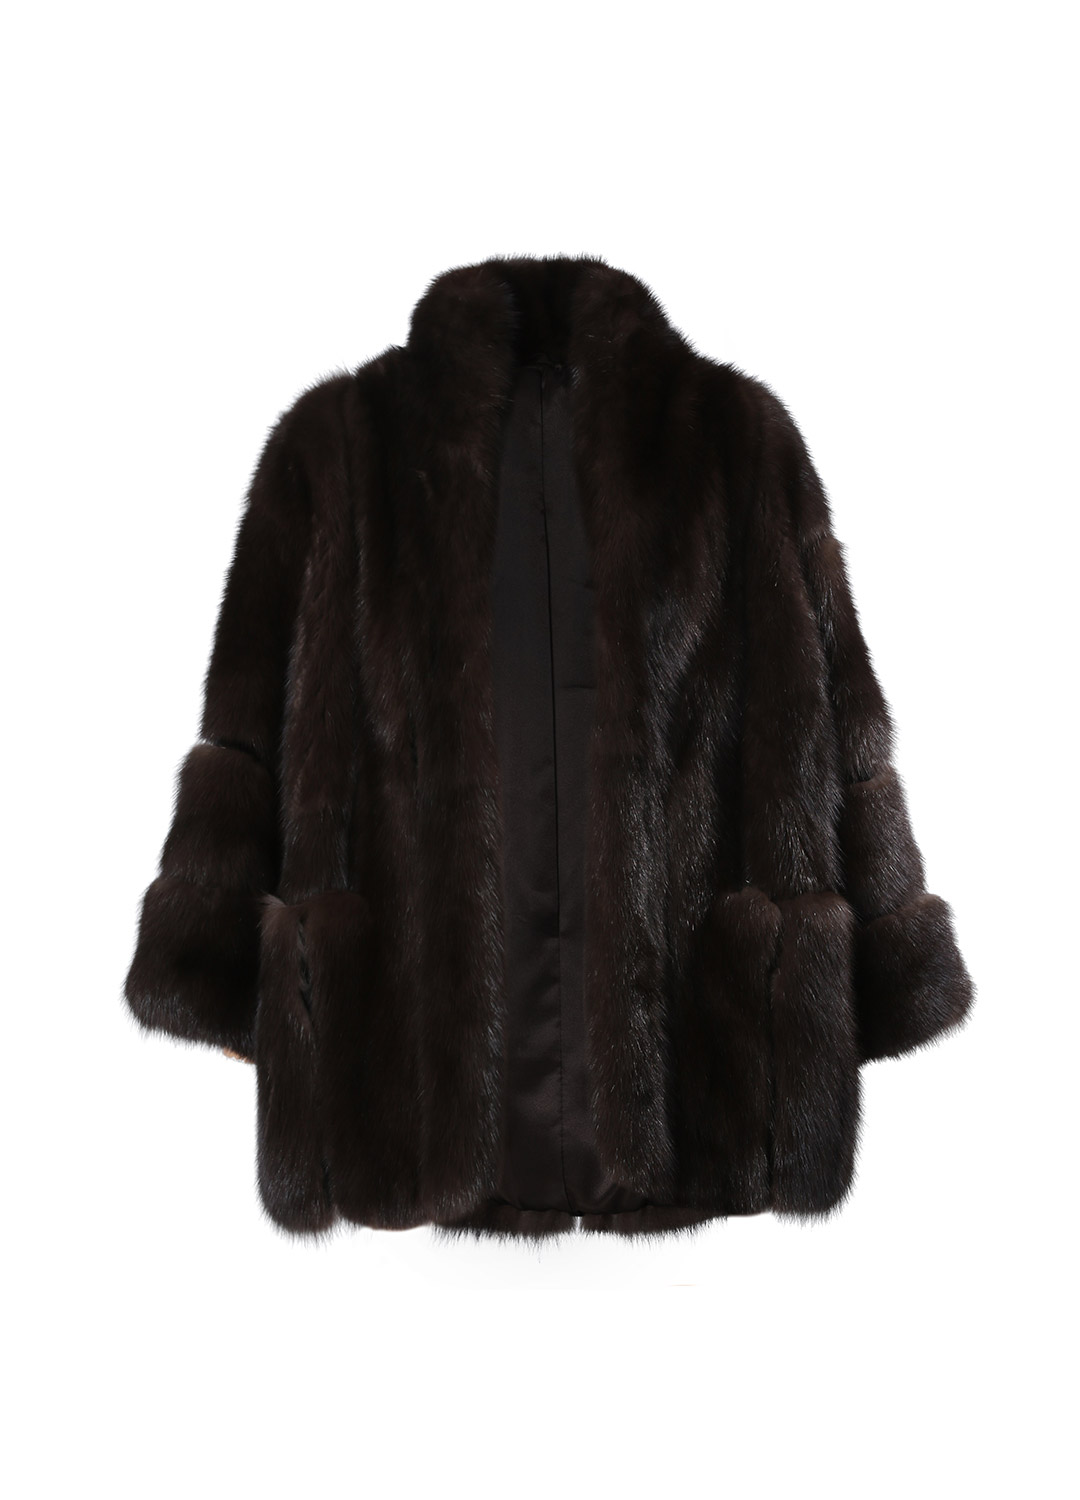 Dark brown shawl sable coat [Special grade fur]